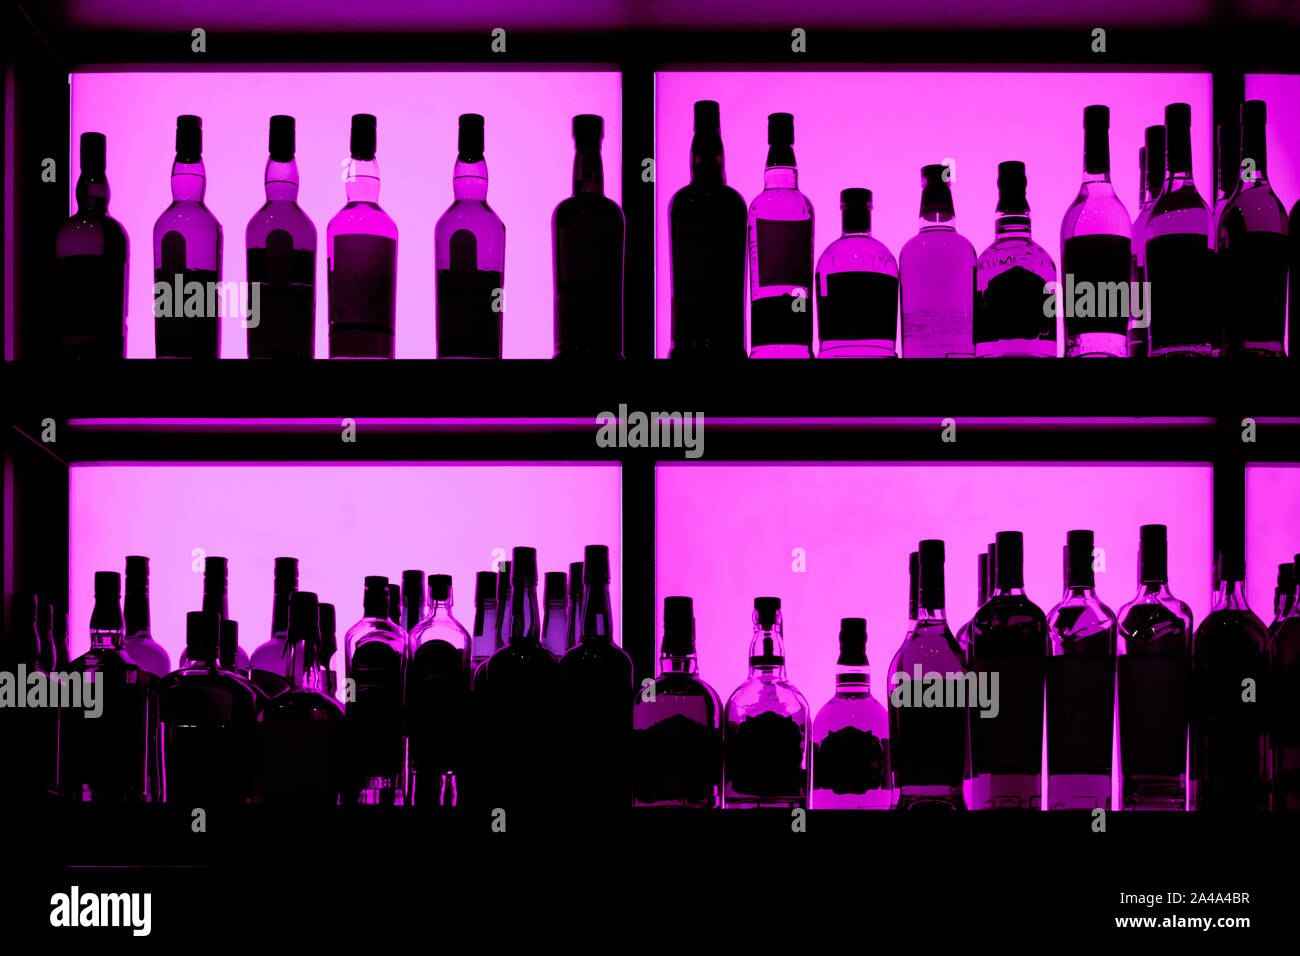 Flaschen im Regal sitzen in einer Bar, beleuchtete mit neon blau  Stockfotografie - Alamy